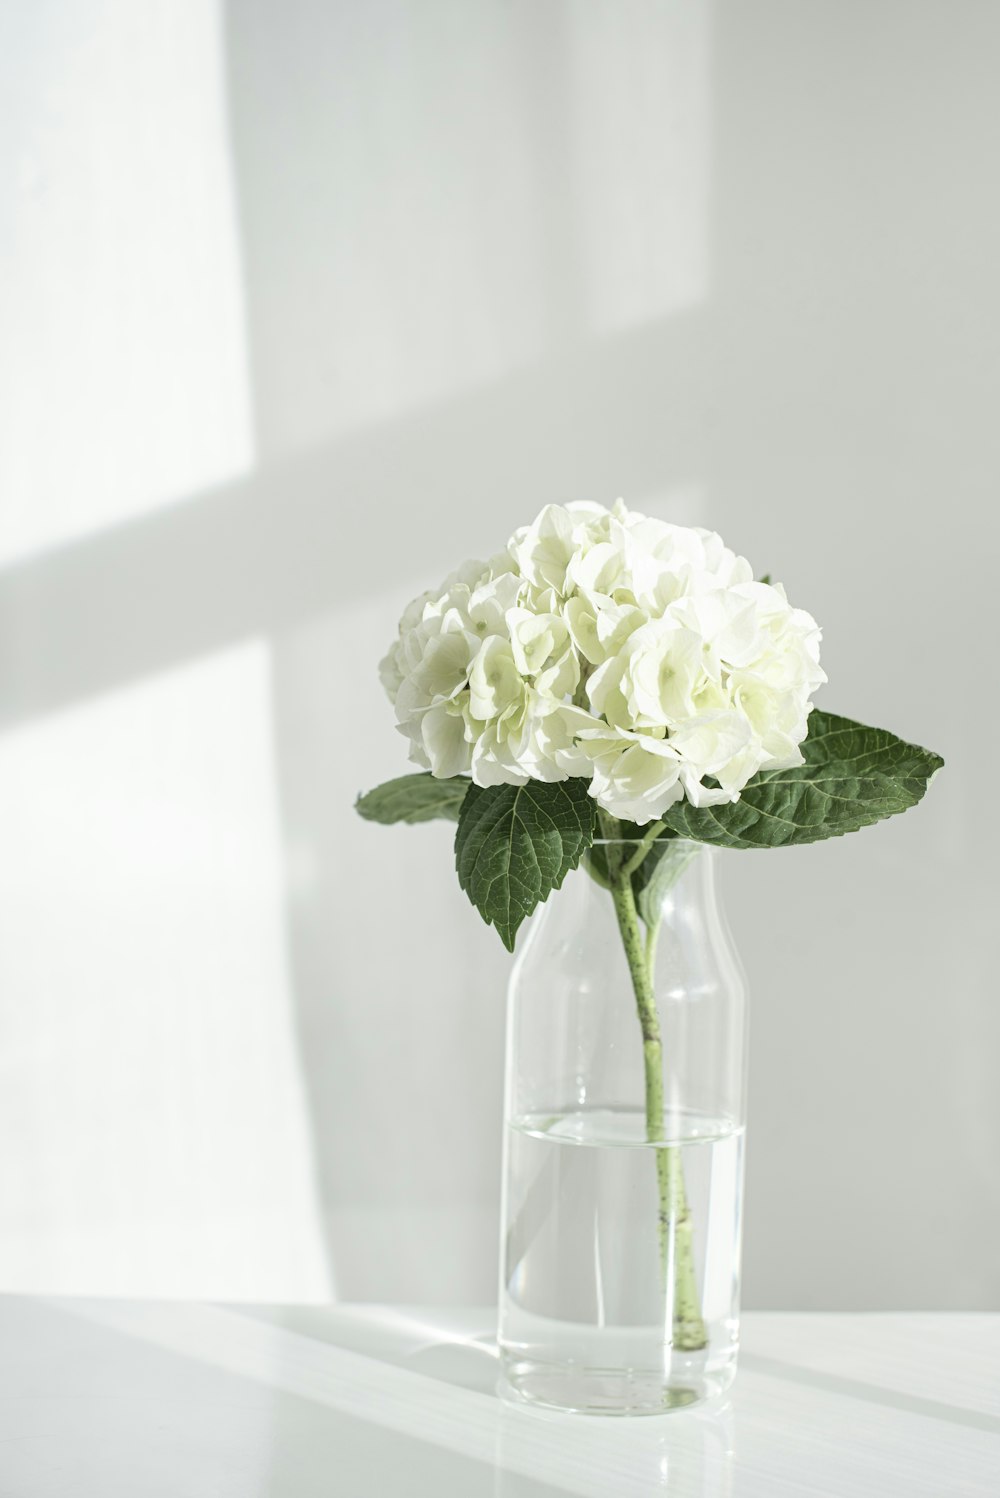 Rose blanche dans un vase en verre transparent